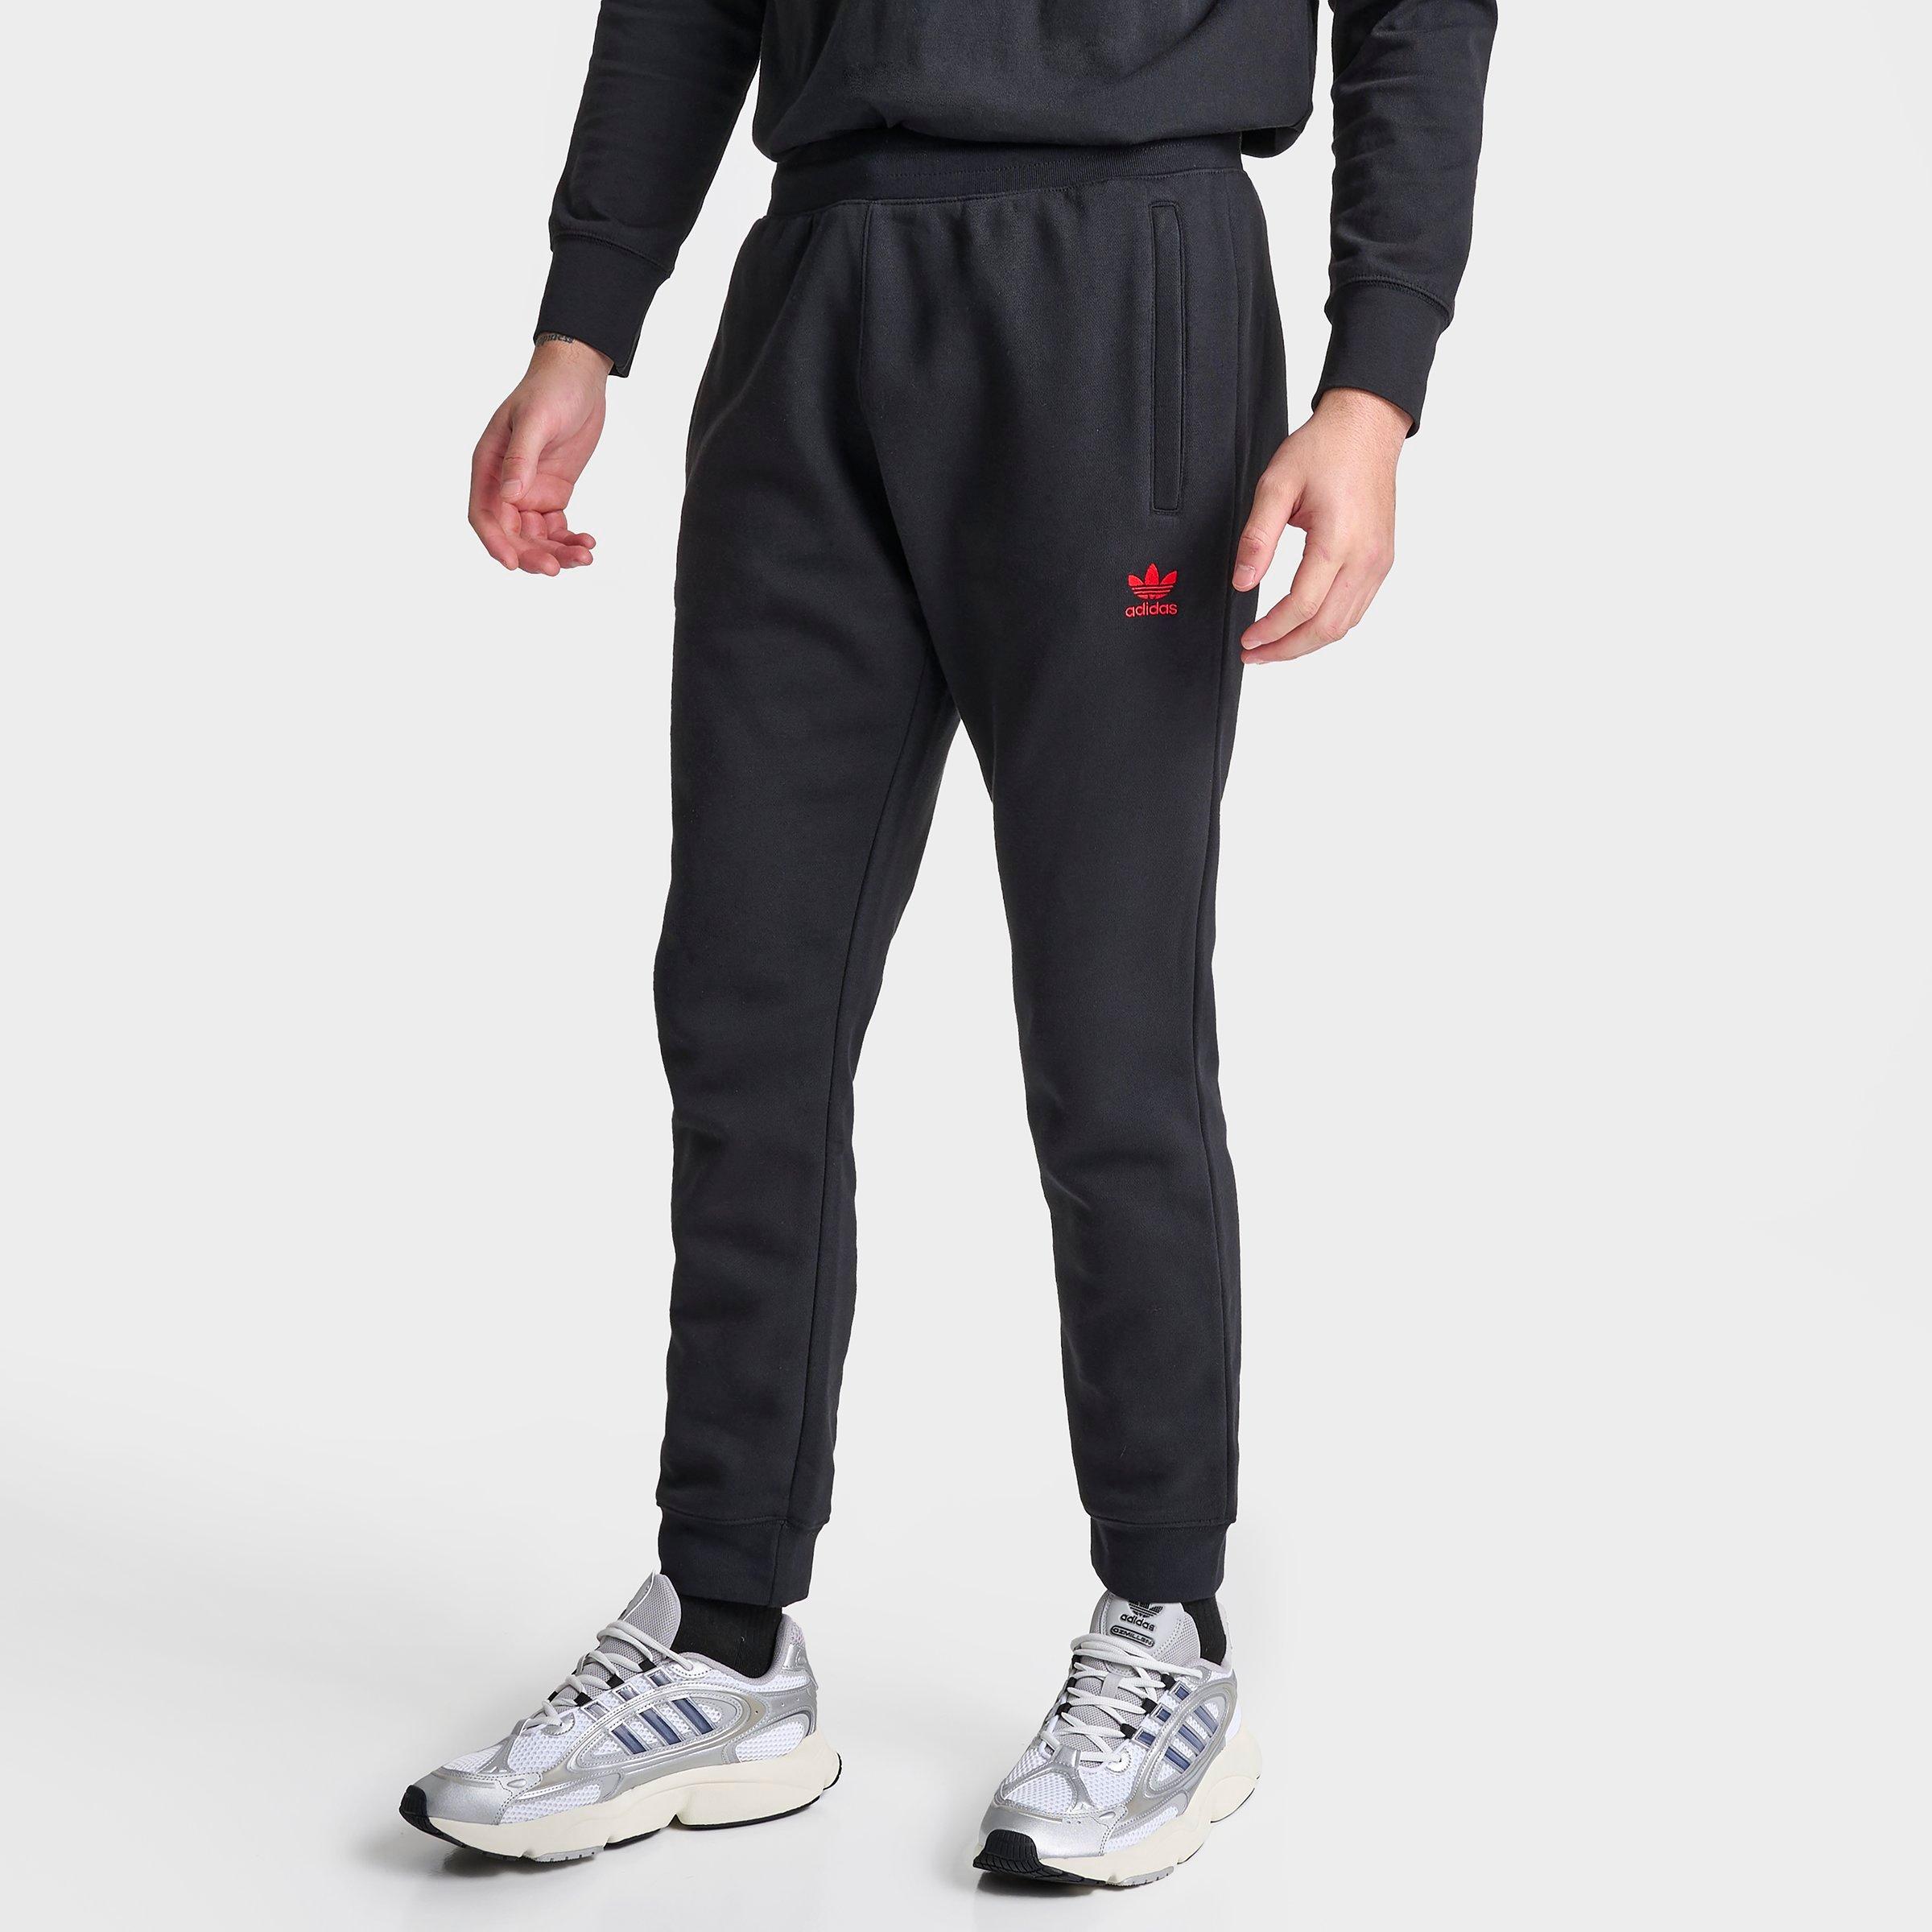 Adidas Originals Adidas Men's Originals Trefoil Essentials Sweatpants In Black/scarlet